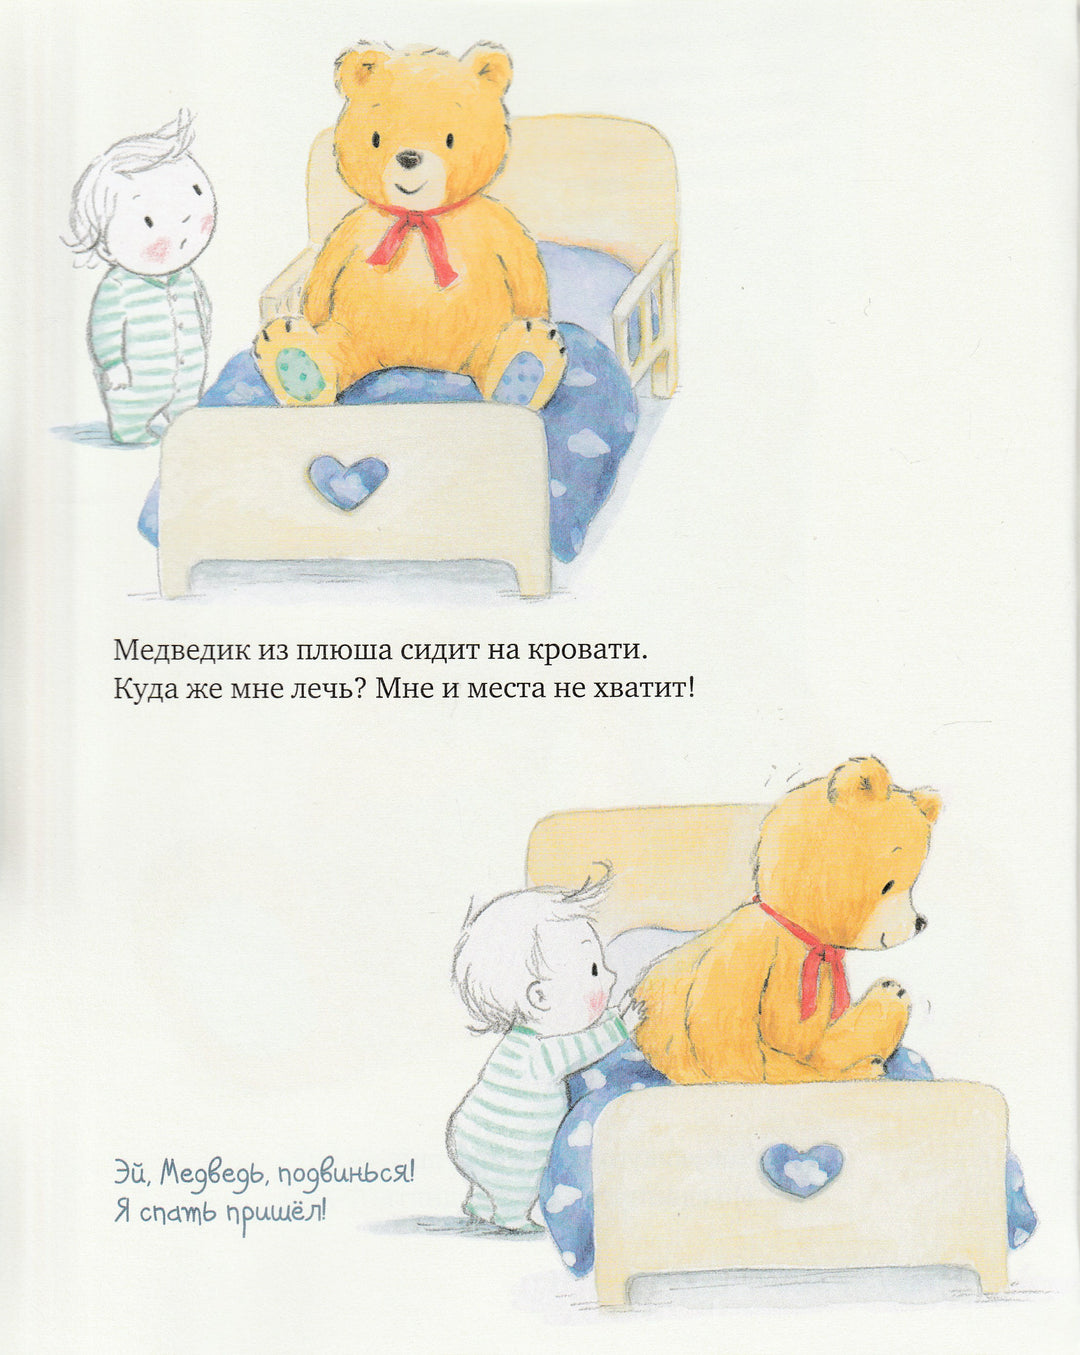 Мой большой медведик-Элиан Т.-Манн, Иванов и Фербеp-Lookomorie